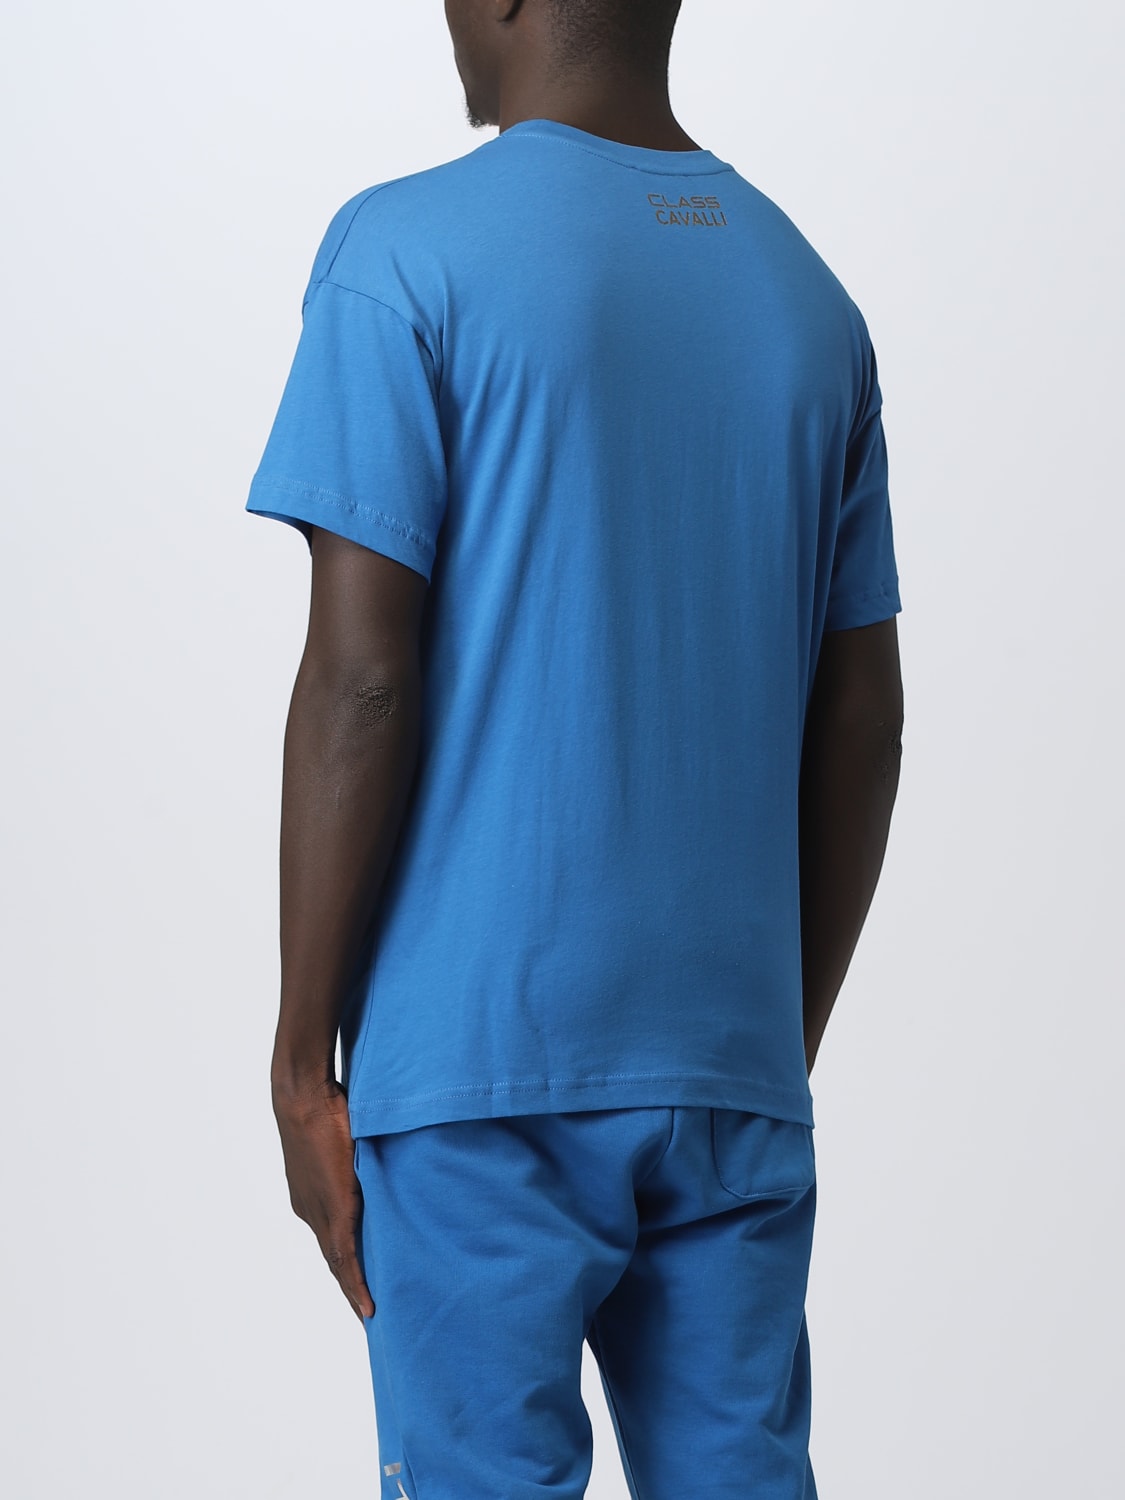 Class Roberto Cavalli Outlet: t-shirt for man - Blue | Class Roberto ...